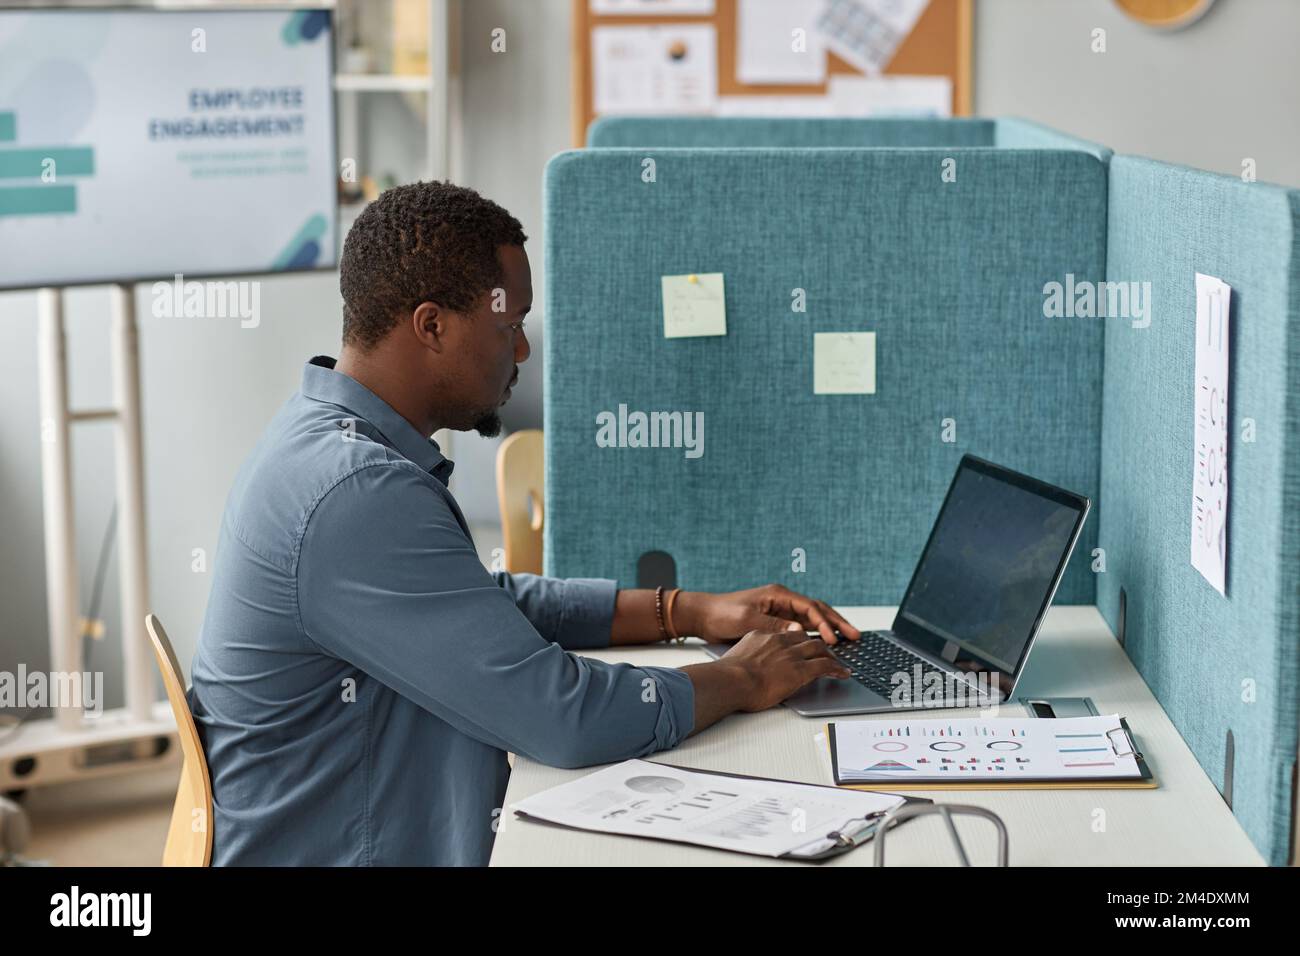 Vue latérale d'un homme noir travaillant avec un ordinateur portable dans l'armoire du bureau Banque D'Images